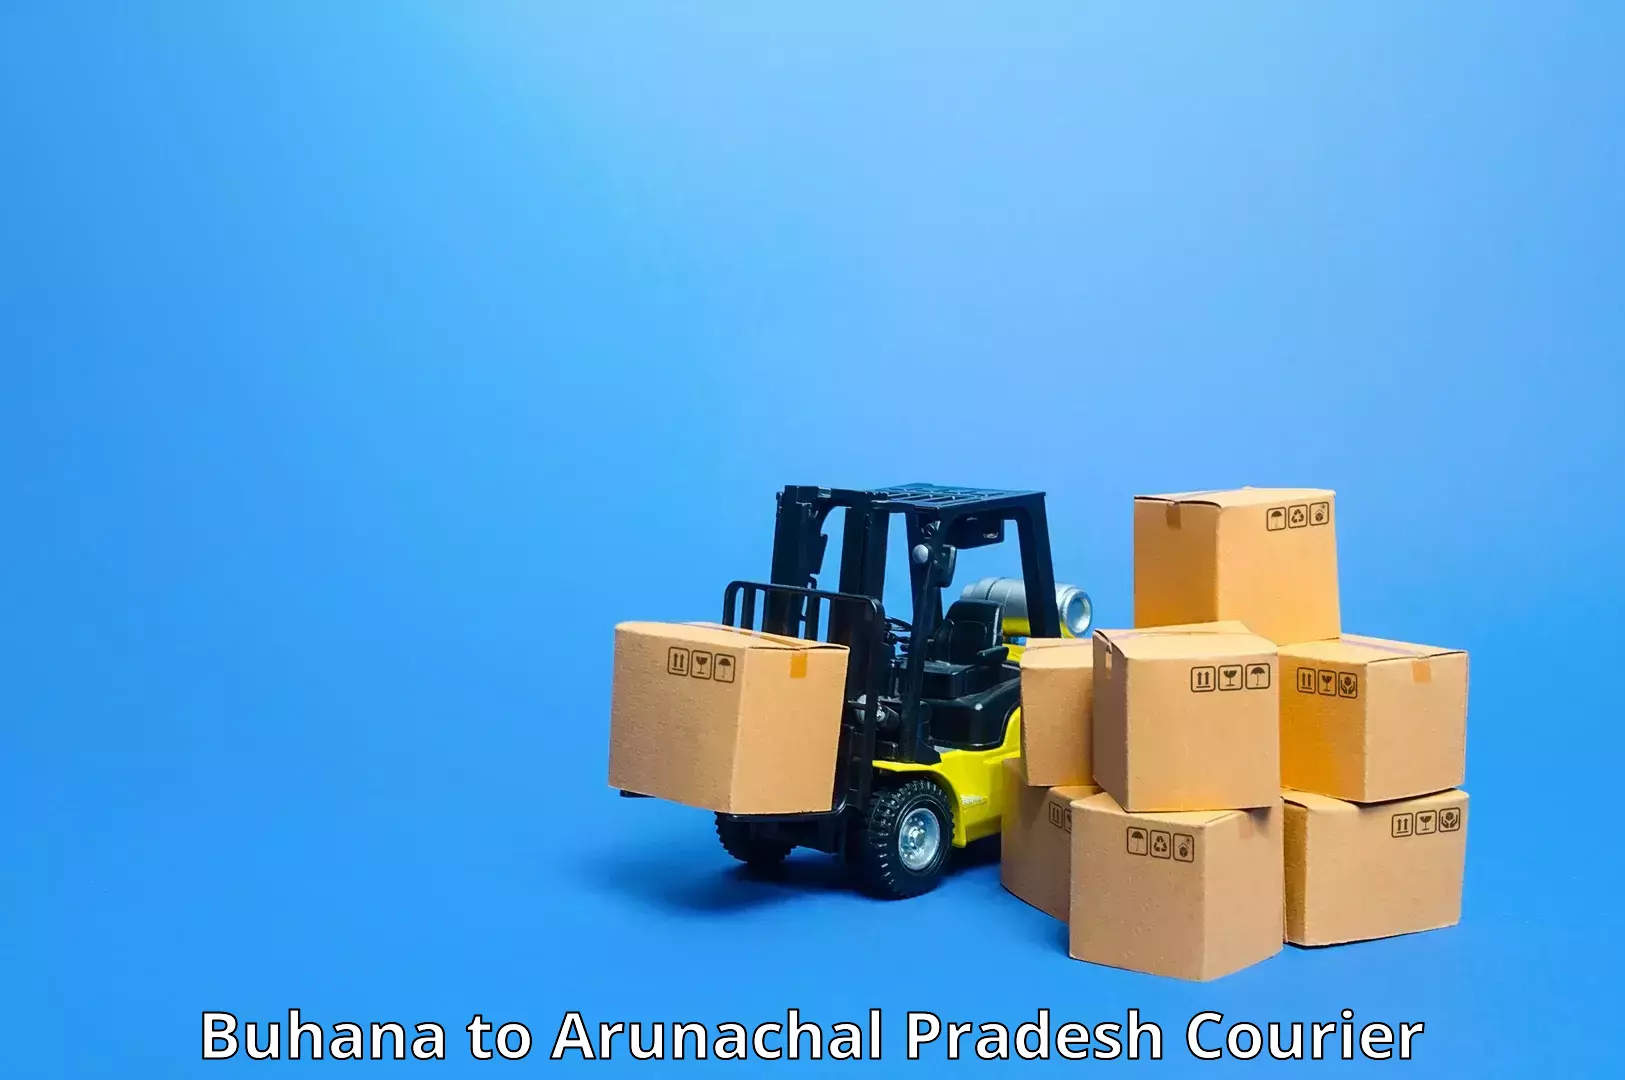 Express courier capabilities Buhana to Naharlagun